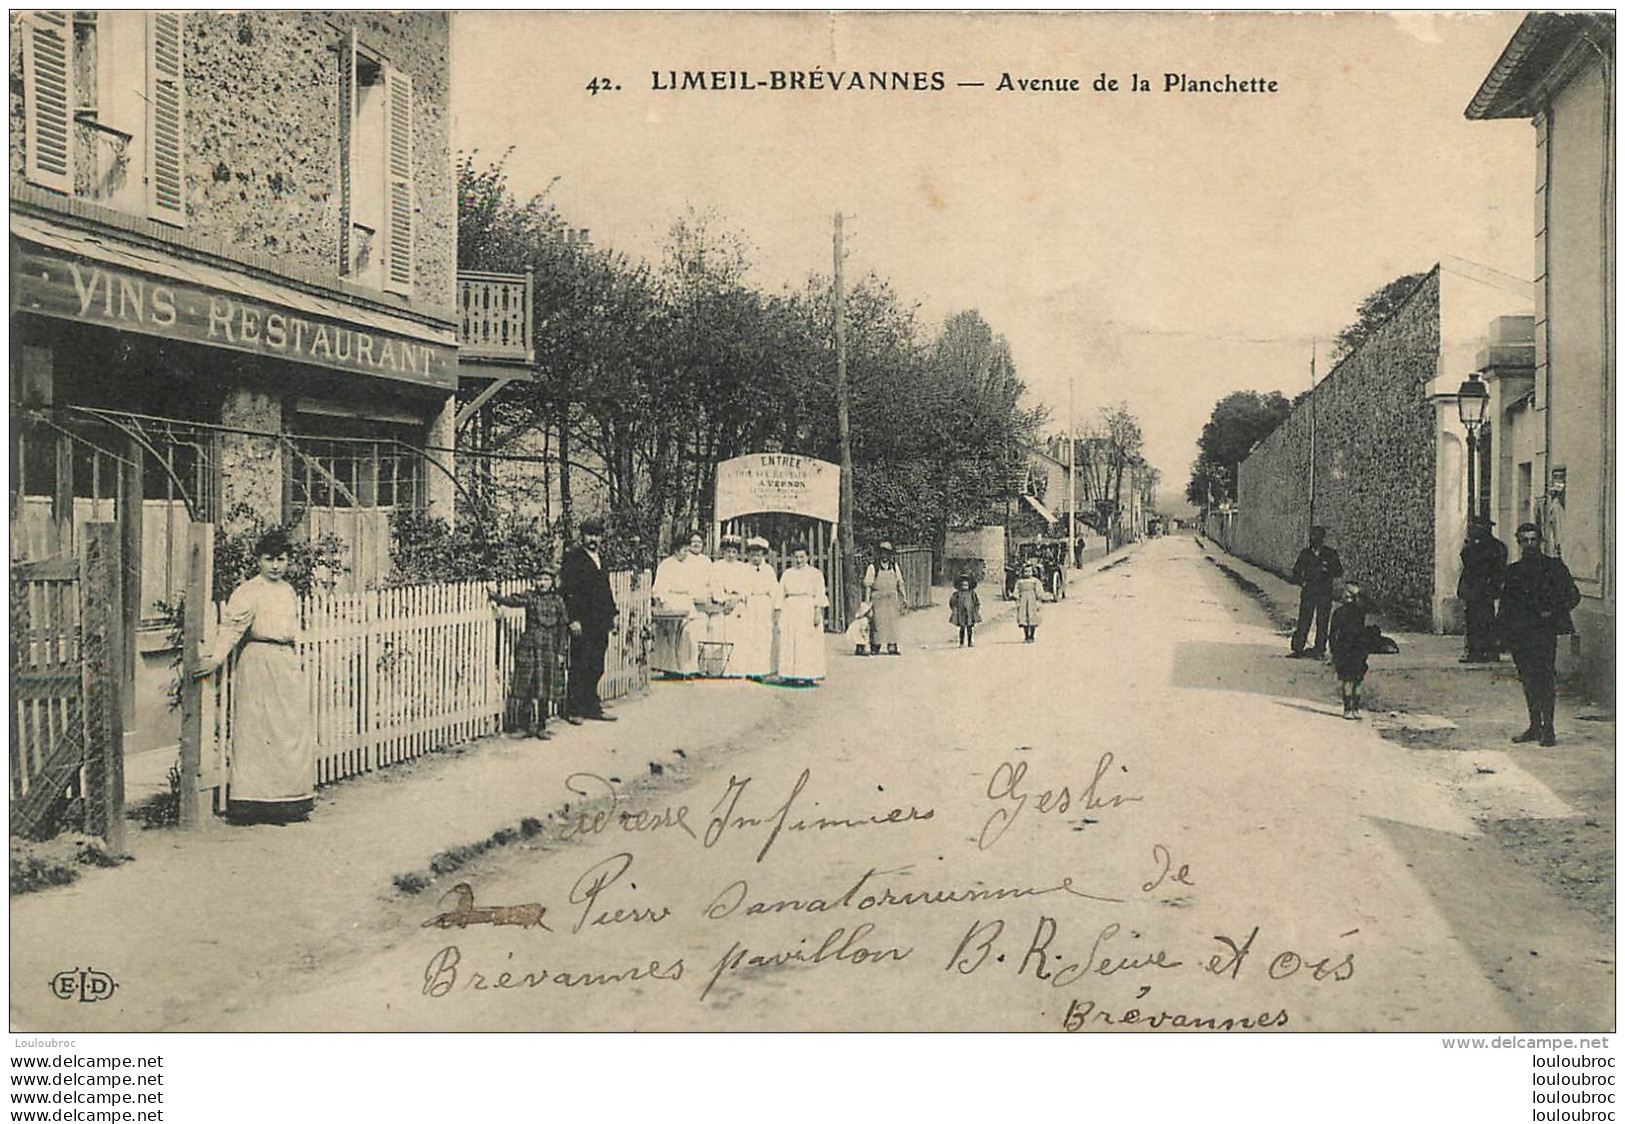 LIMEIL BREVANNES AVENUE DE LA PLANCHETTE CAFE RESTAURANT A. VERNON - Limeil Brevannes